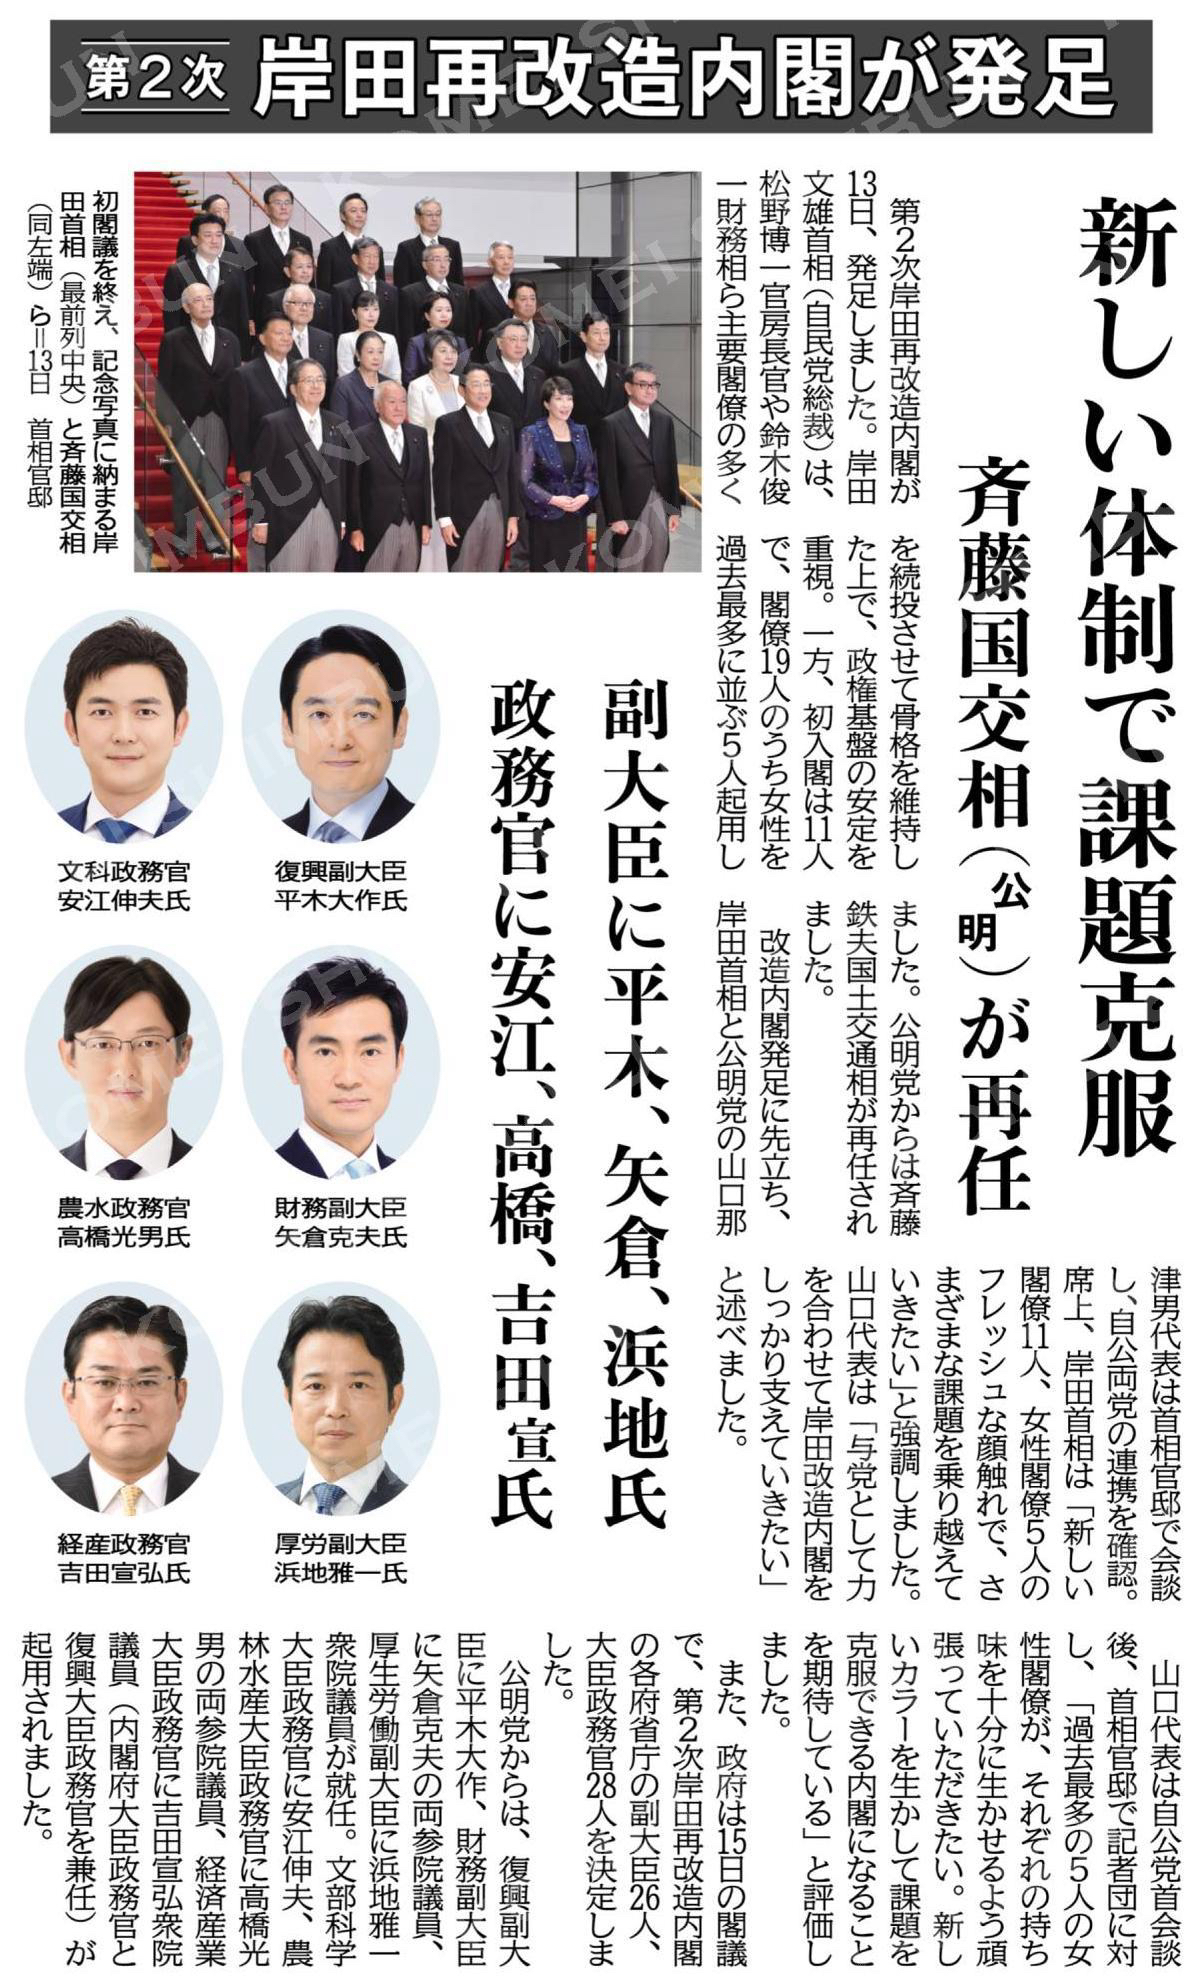 第2次岸田再改造内閣が発足
新しい体制で課題克服　
斉藤国交相（公明）が再任